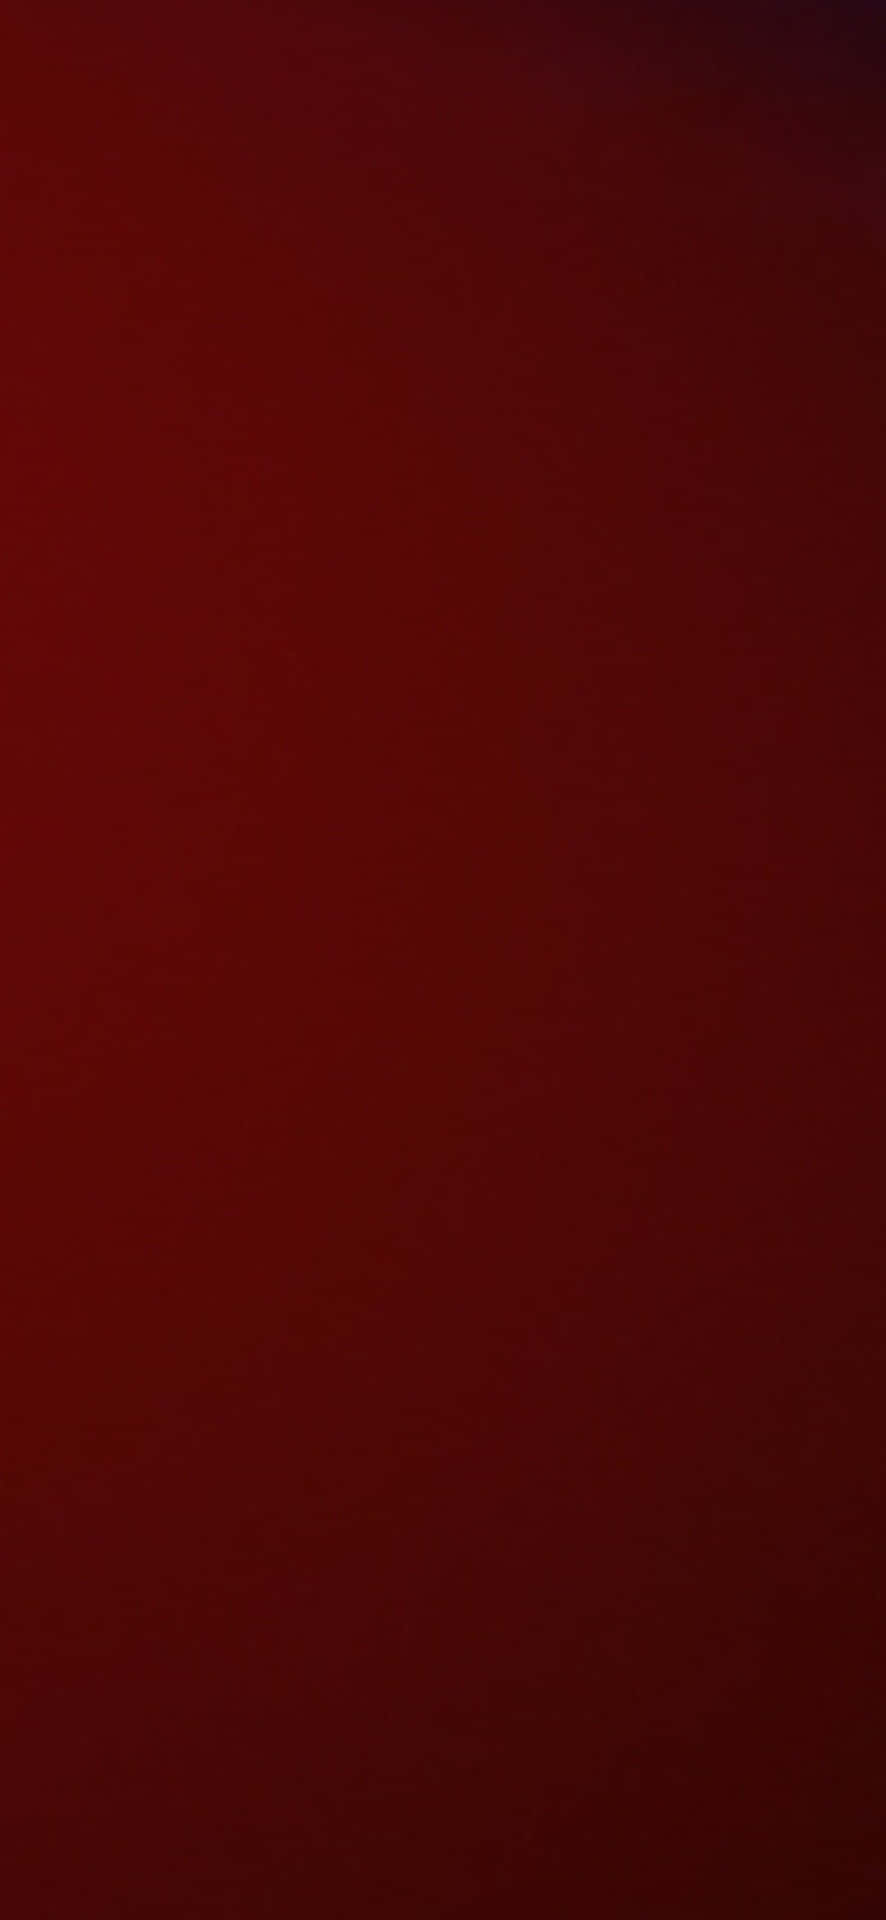 Dark Red Background Vertical Dimension